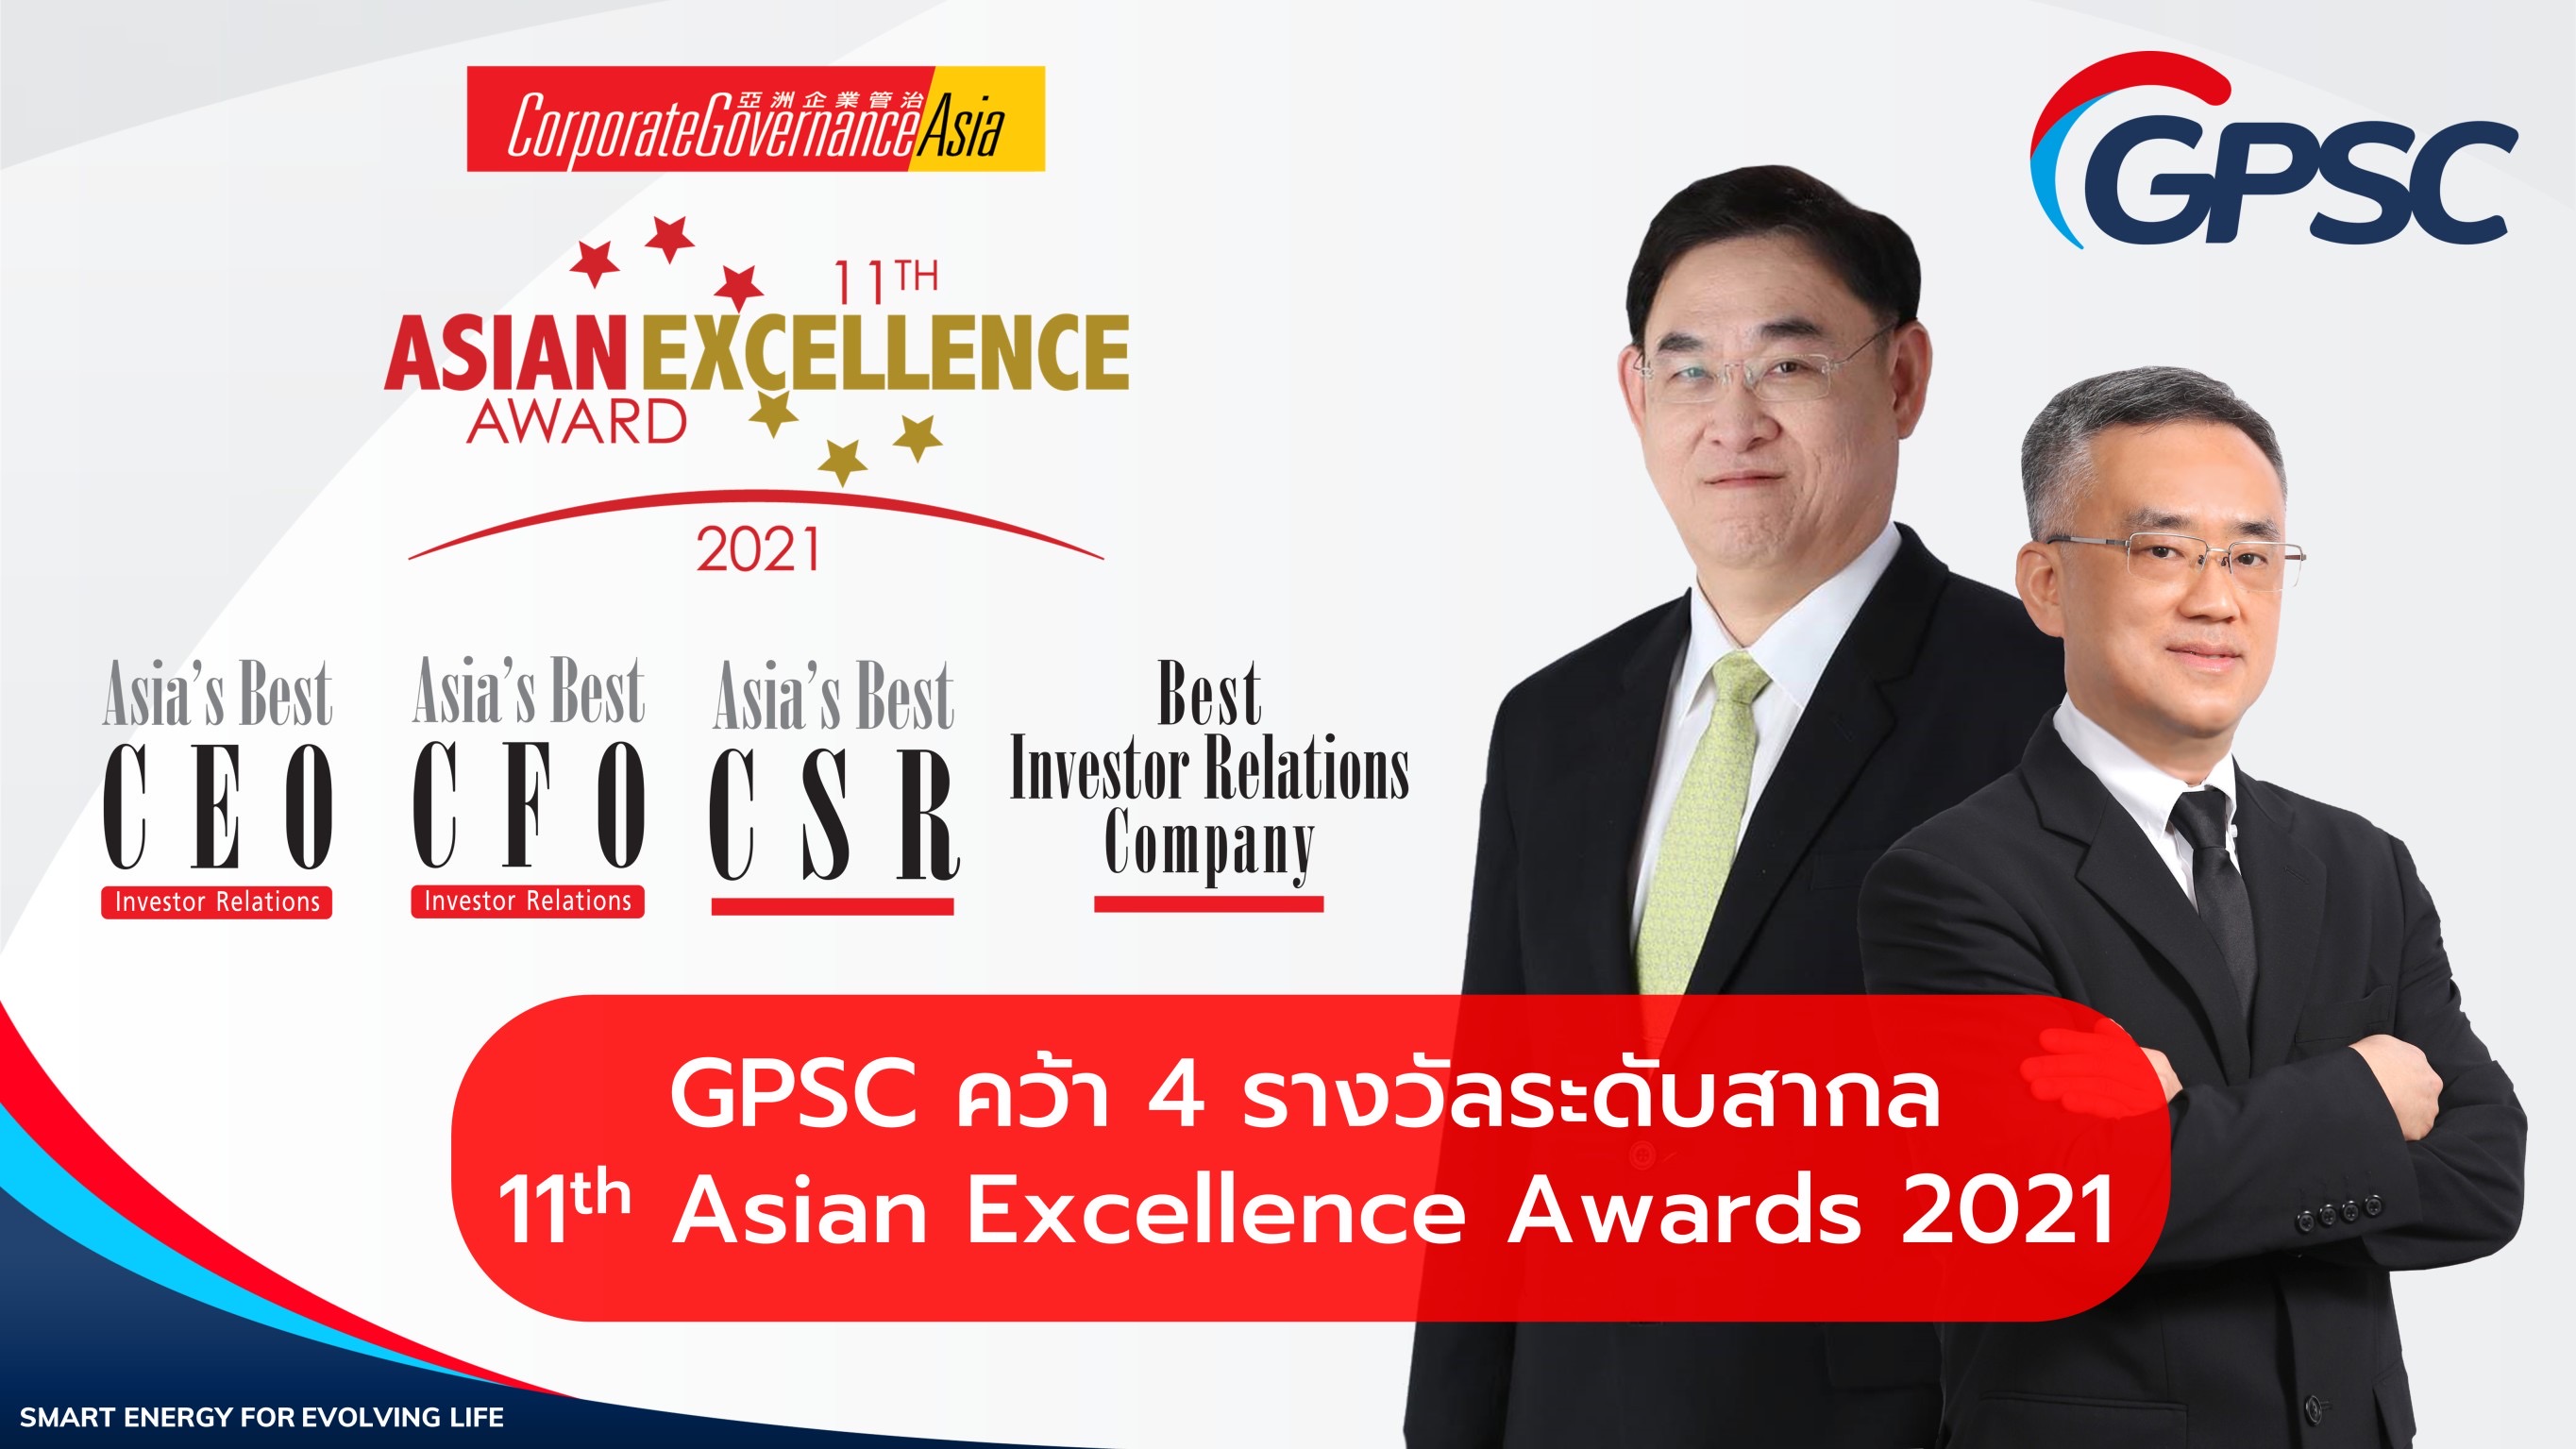 GPSC คว้า 4 รางวัลระดับสากลจากเวที Asian Excellence Awards 2021 การันตีความสำเร็จต่อเนื่องปีที่ 2   ขับเคลื่อนธุรกิจสู่ความยั่งยืน